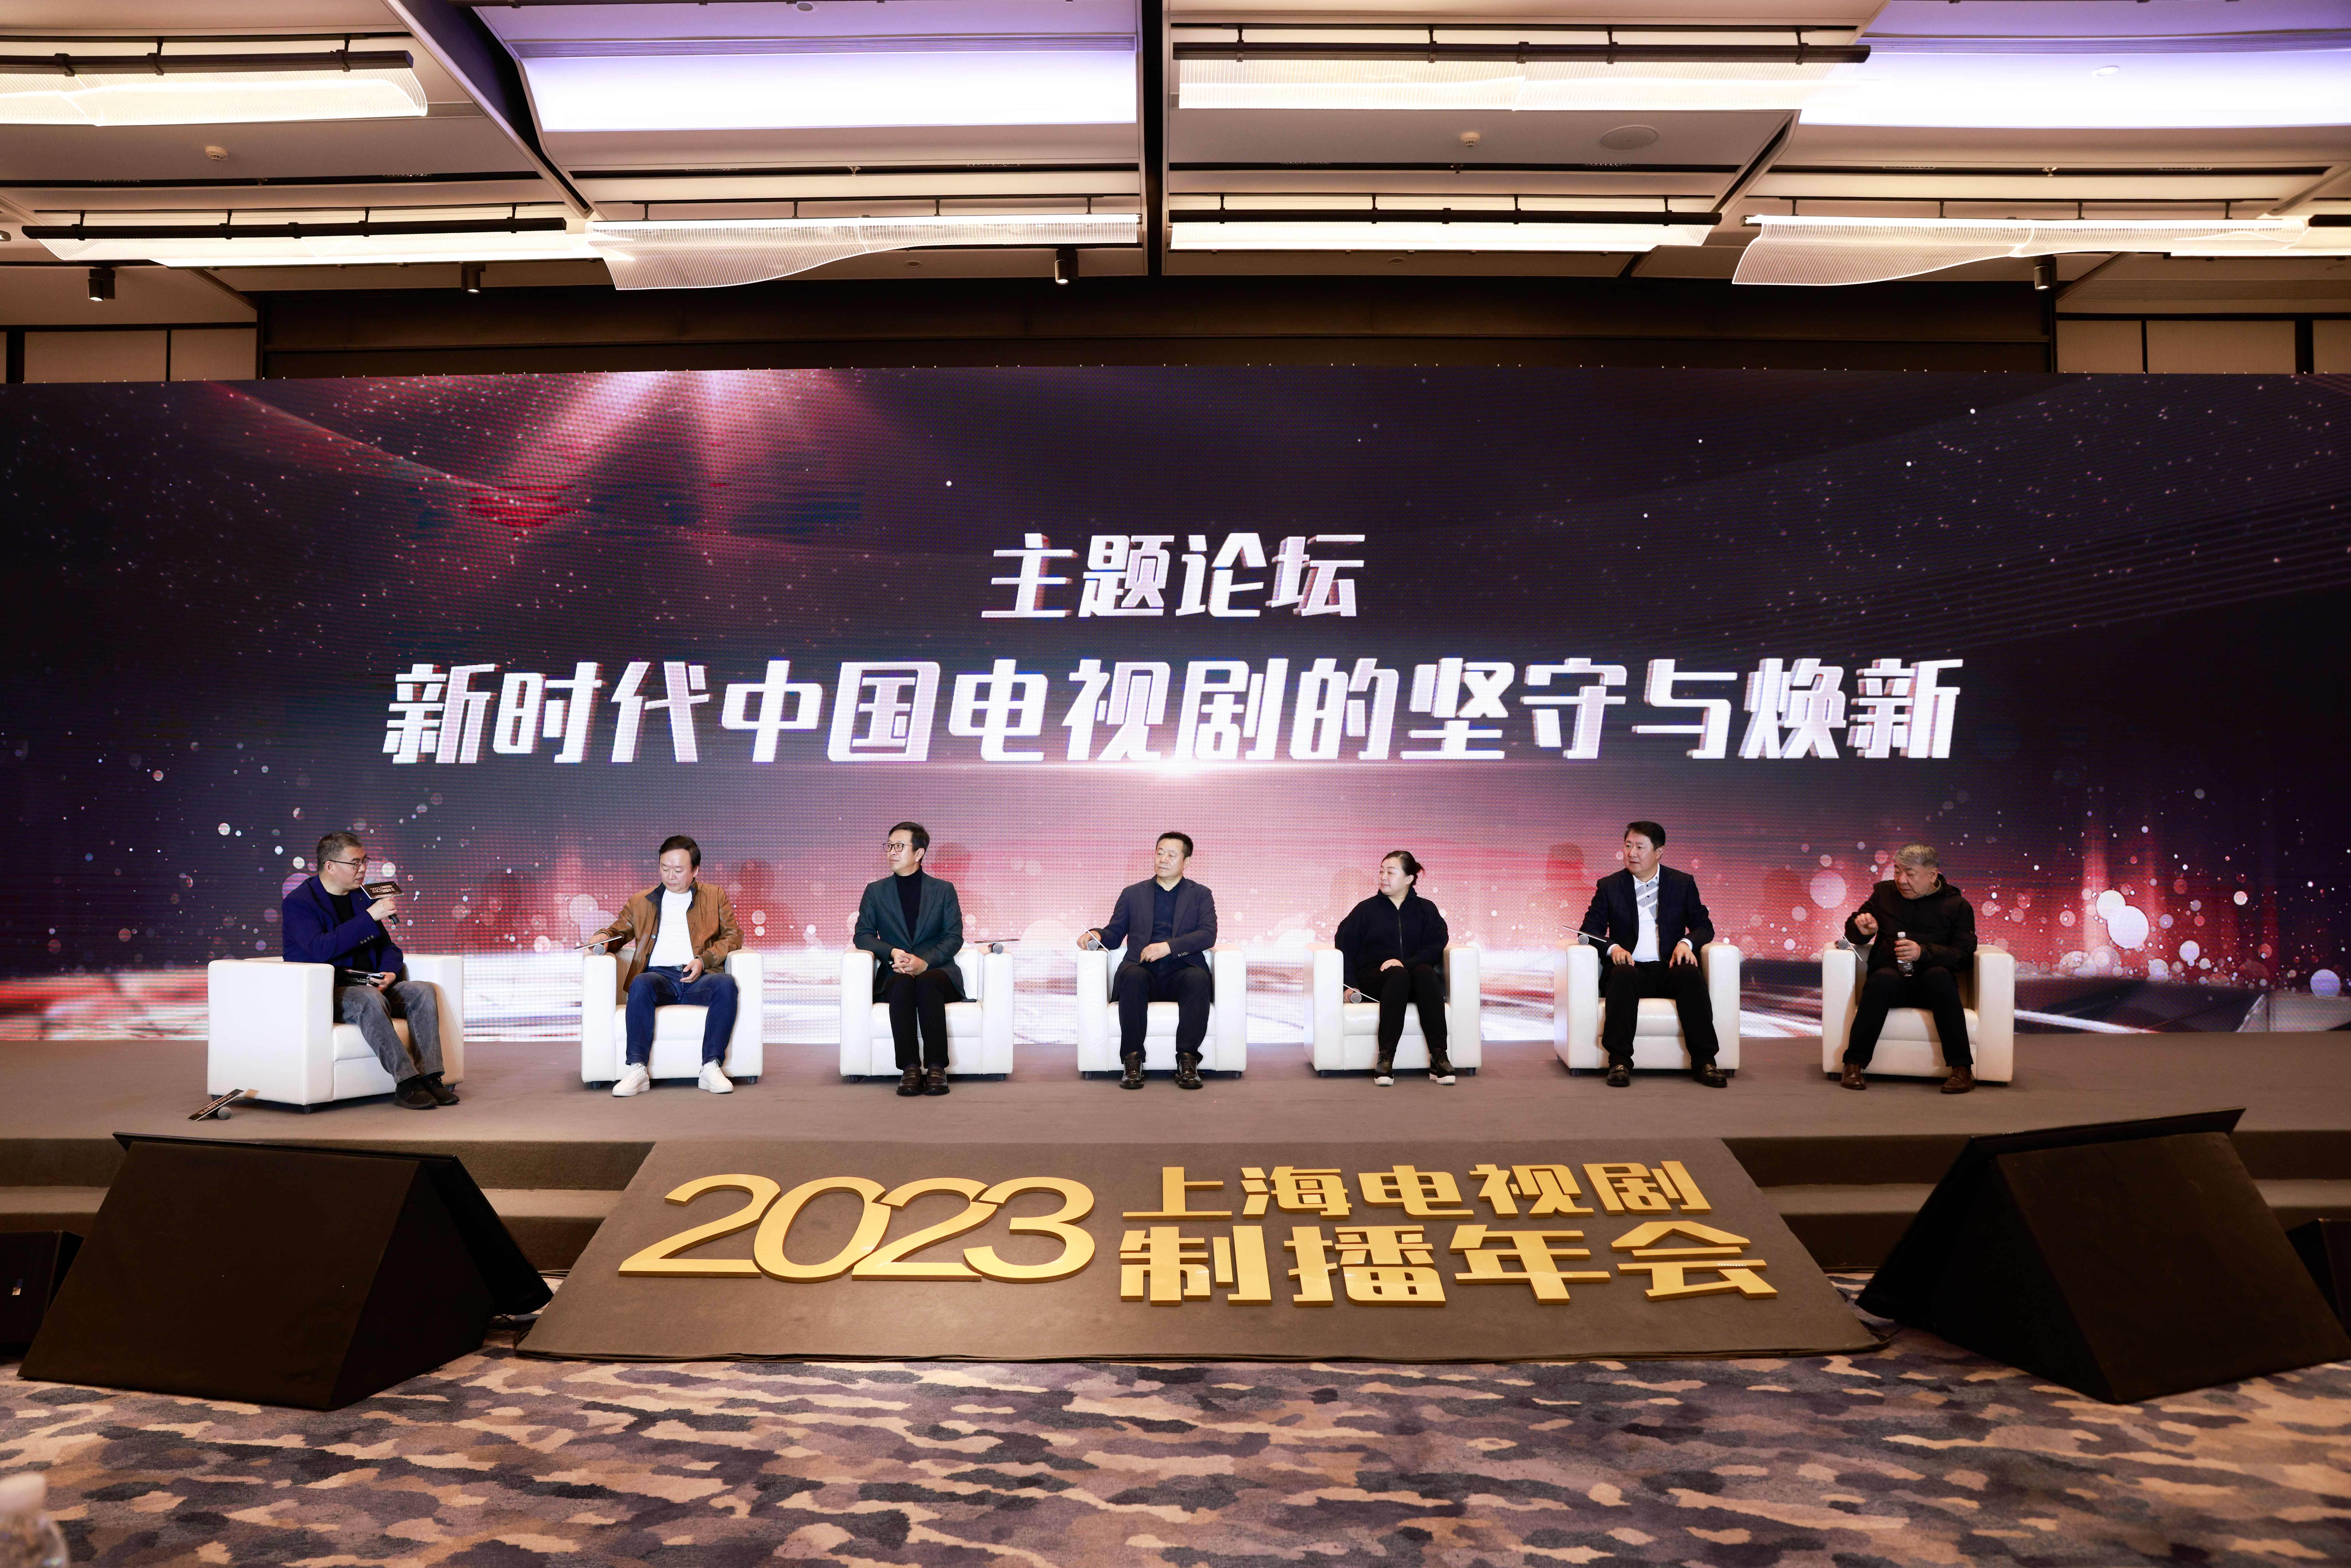 2023弹幕互动
:“2023上海电视剧制播年会”举行<strong></p>
<p>2023弹幕互动
</strong>，人工智能互动i剧或将2333出现制播